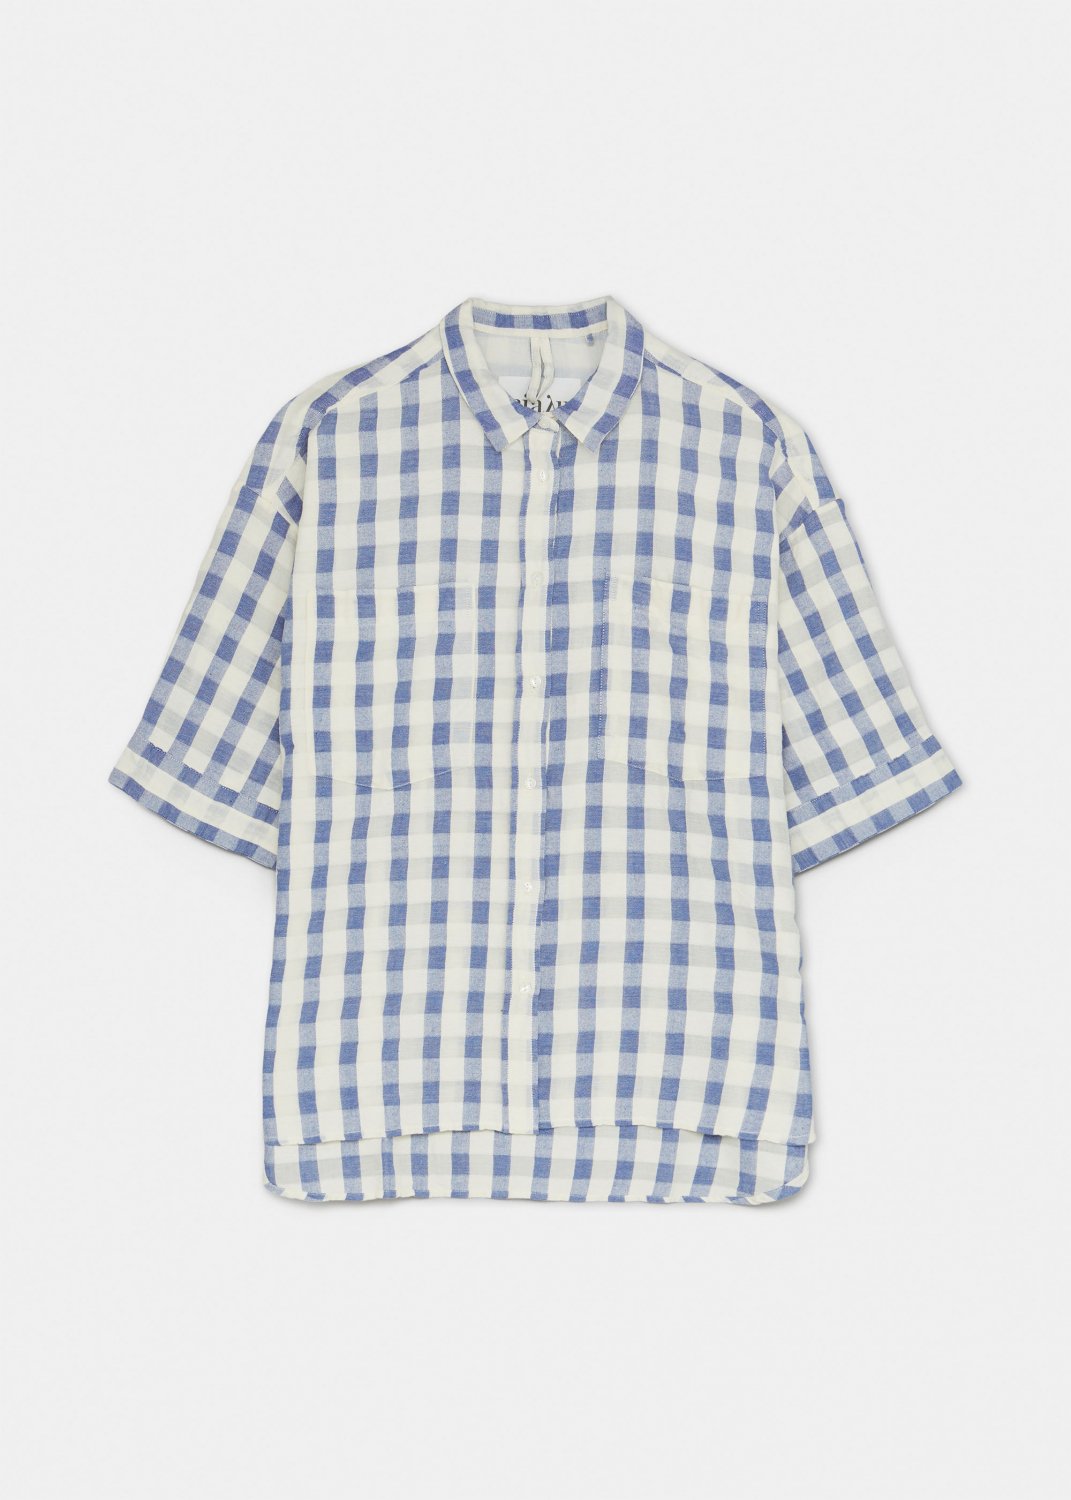 Shirts - Short Sleeve Shirt Check